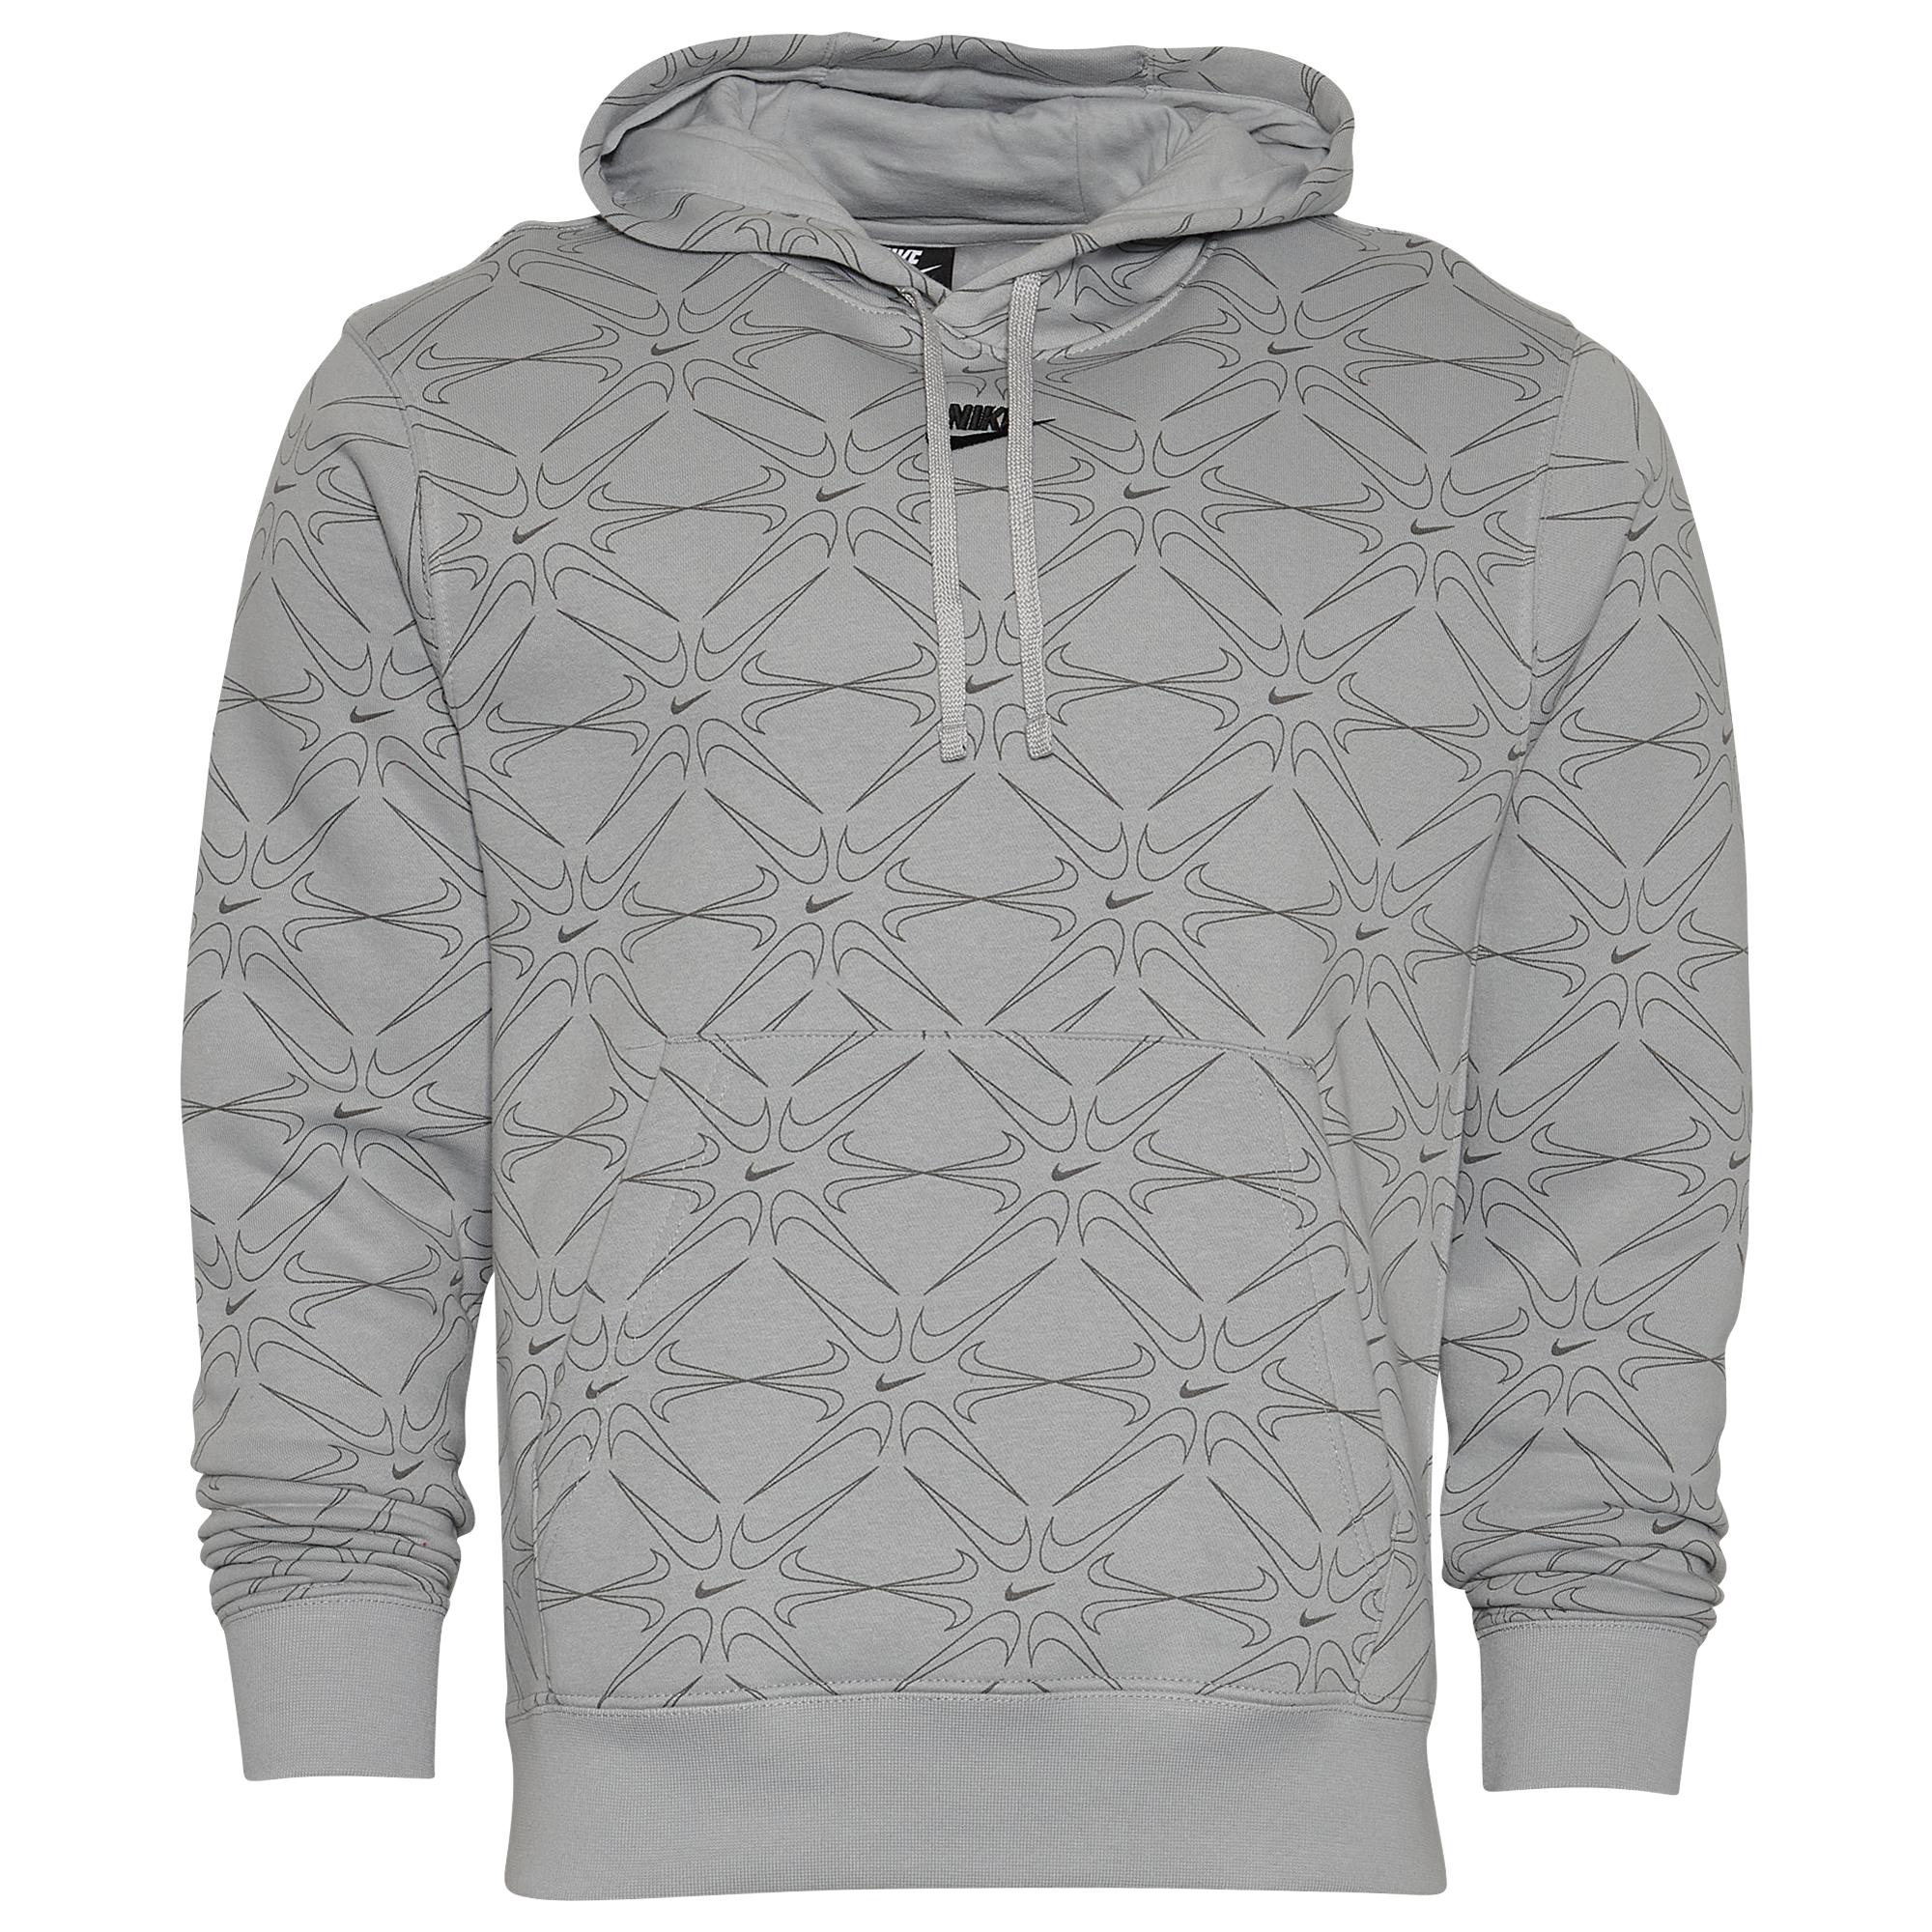 Nike Aop Gel Fleece Pullover Hoodie in Grey/Black (Gray) for Men - Lyst